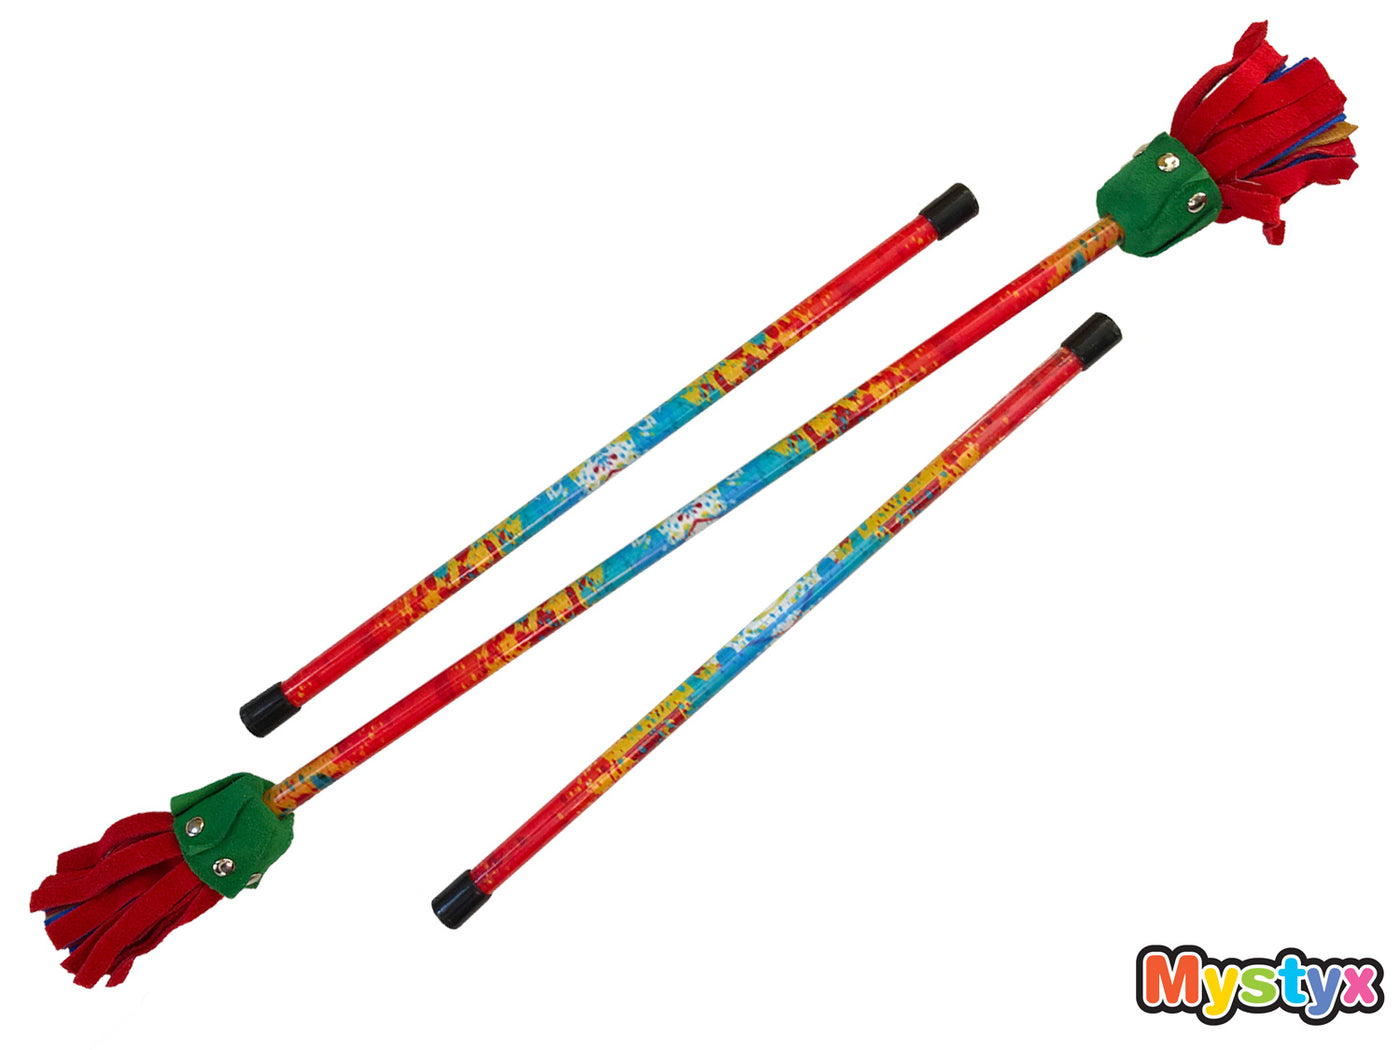 MyStyx bâton du diable / bâton fleur en silicone et cuir - Motif Splash de couleurs - Kit complet